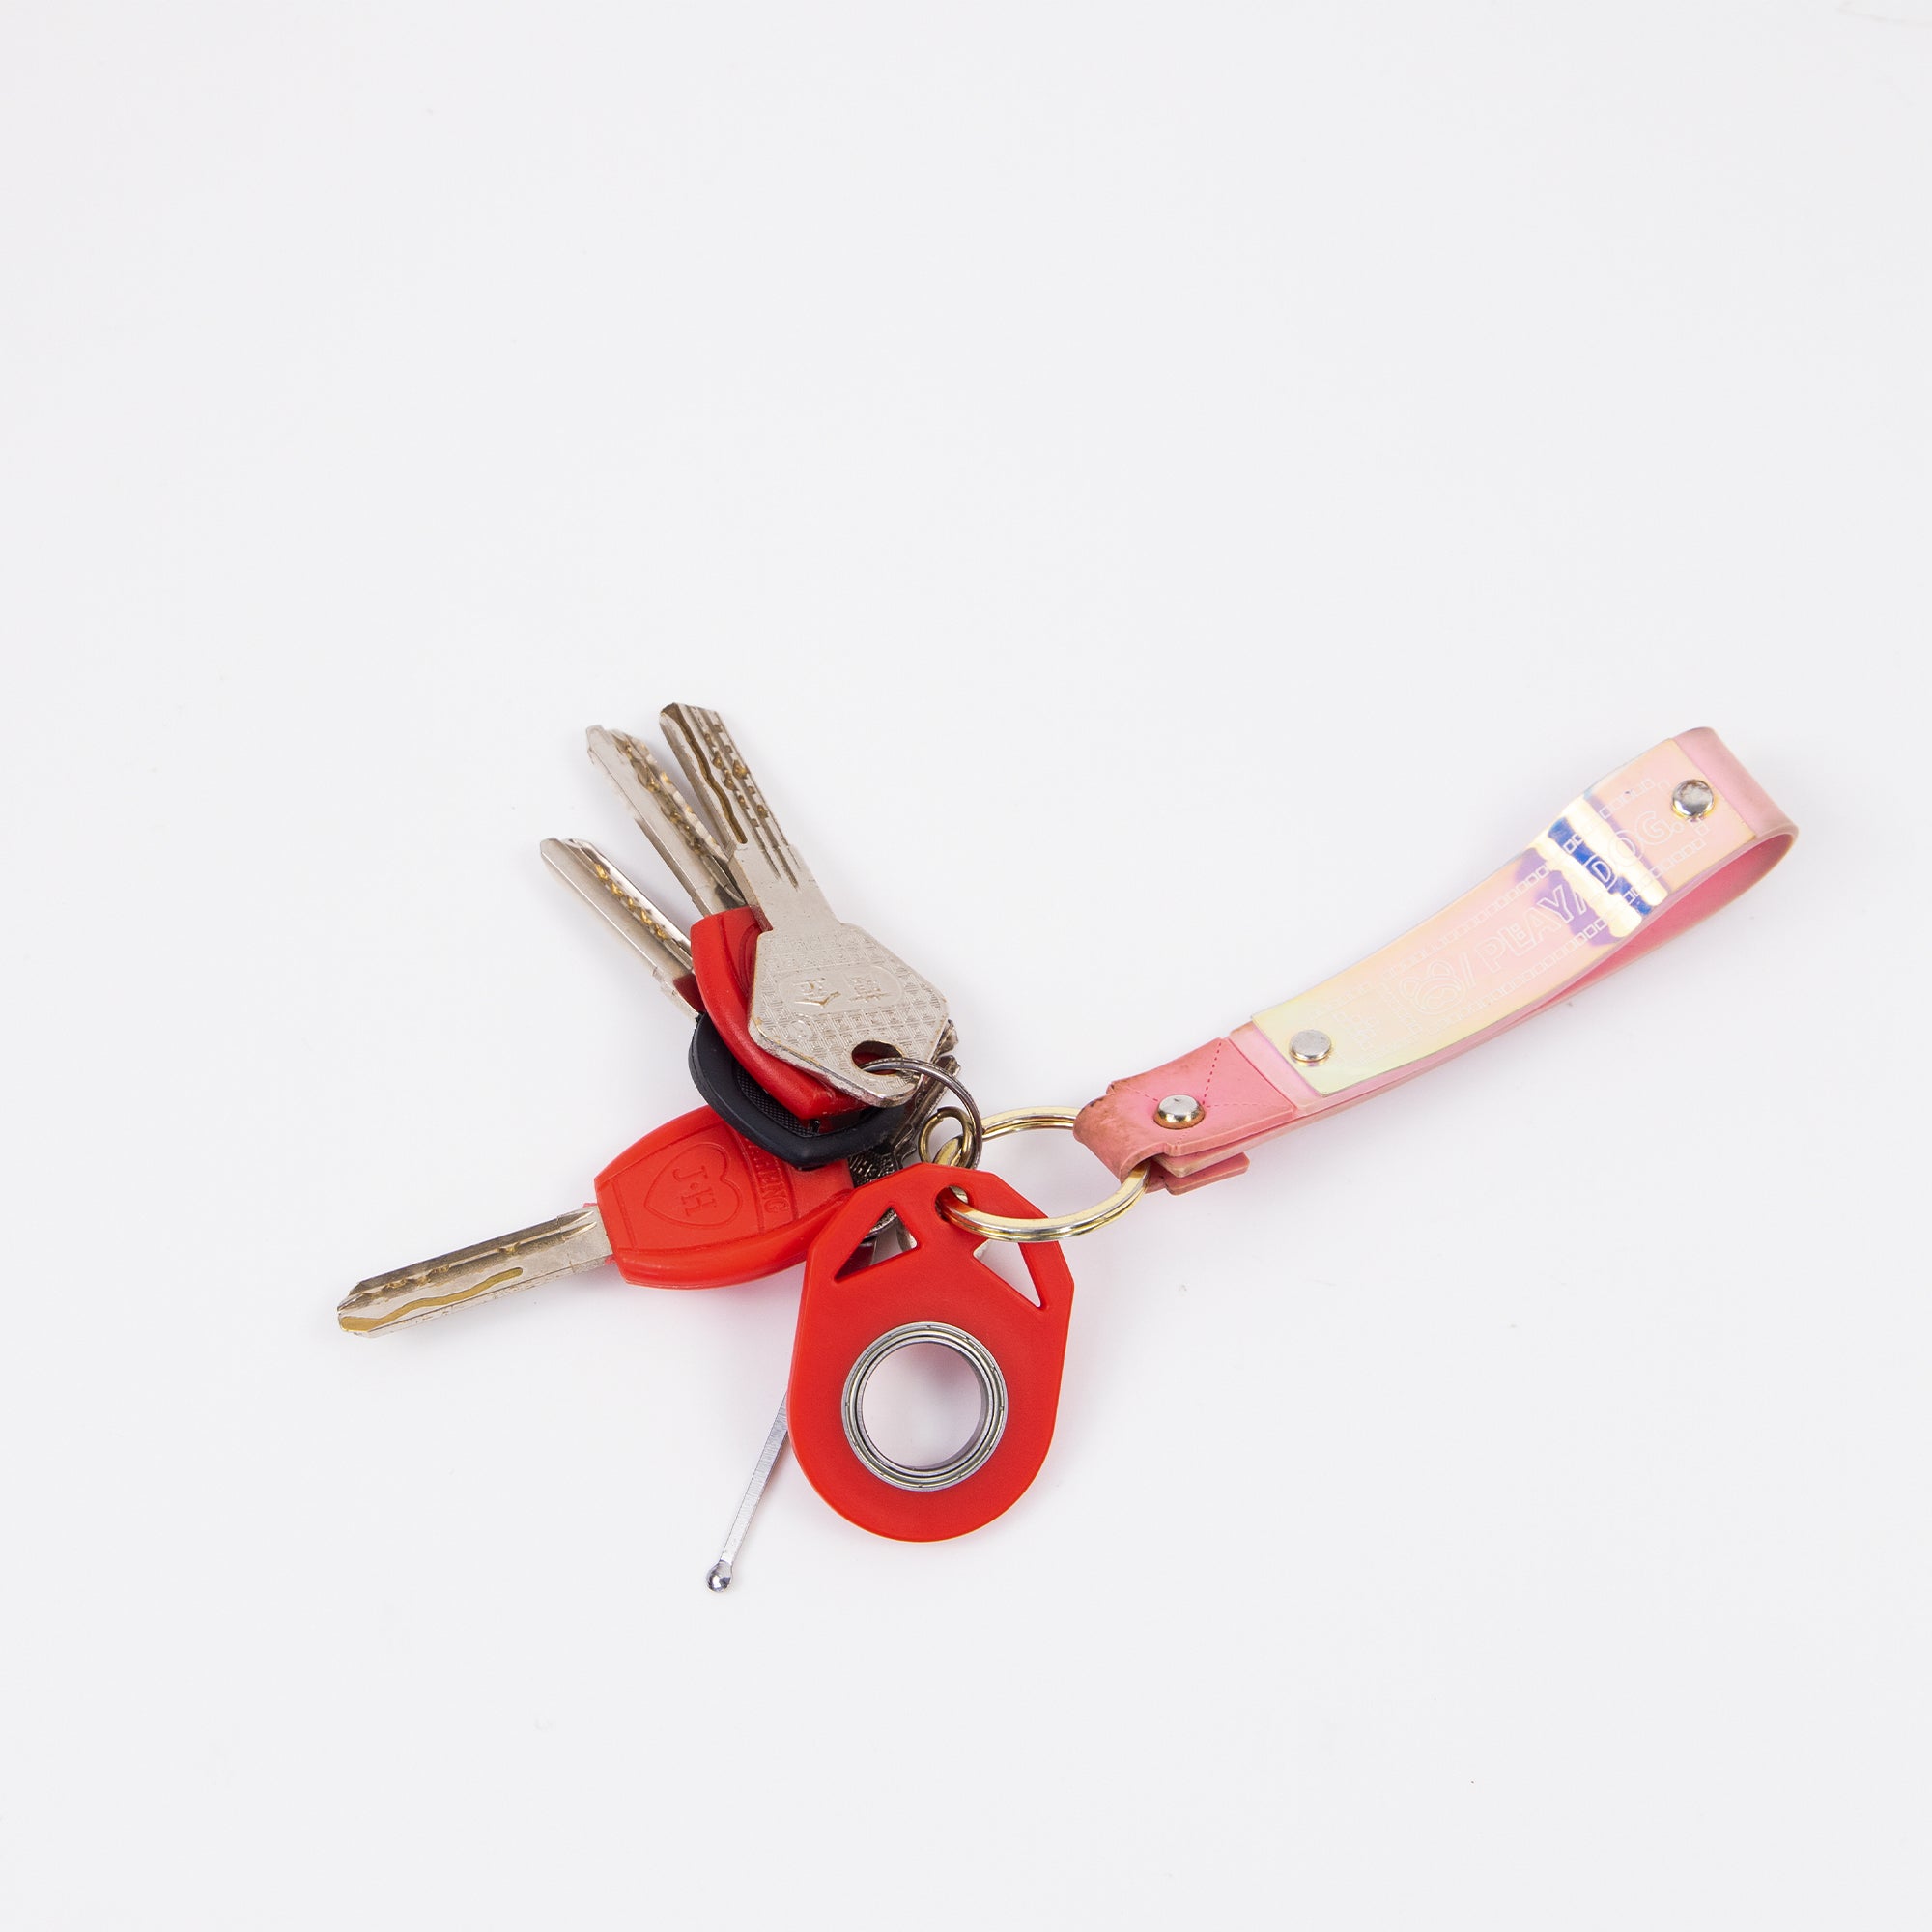 Kreatives Fidget Spinner-Schlüsselanhänger-Handspinner: Anti-Stress-Spielzeug zur Stressreduktion, Finger Spinner-Schlüsselanhänger mit Flaschenöffner, Kinderspielzeug.